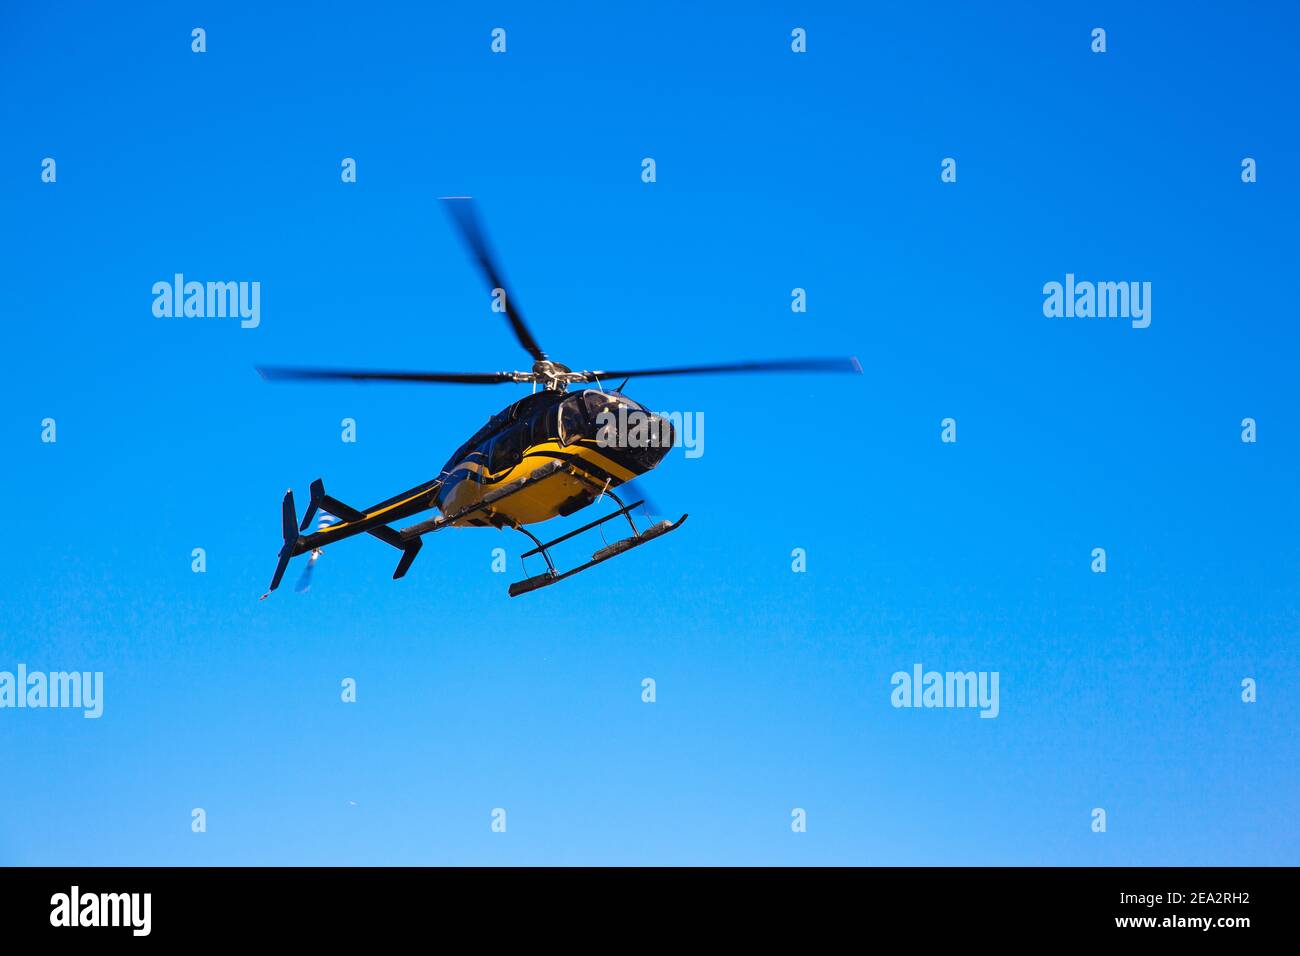 Der isolierte schwarz-gelbe Hubschrauber fliegt in den Himmel. Stockfoto